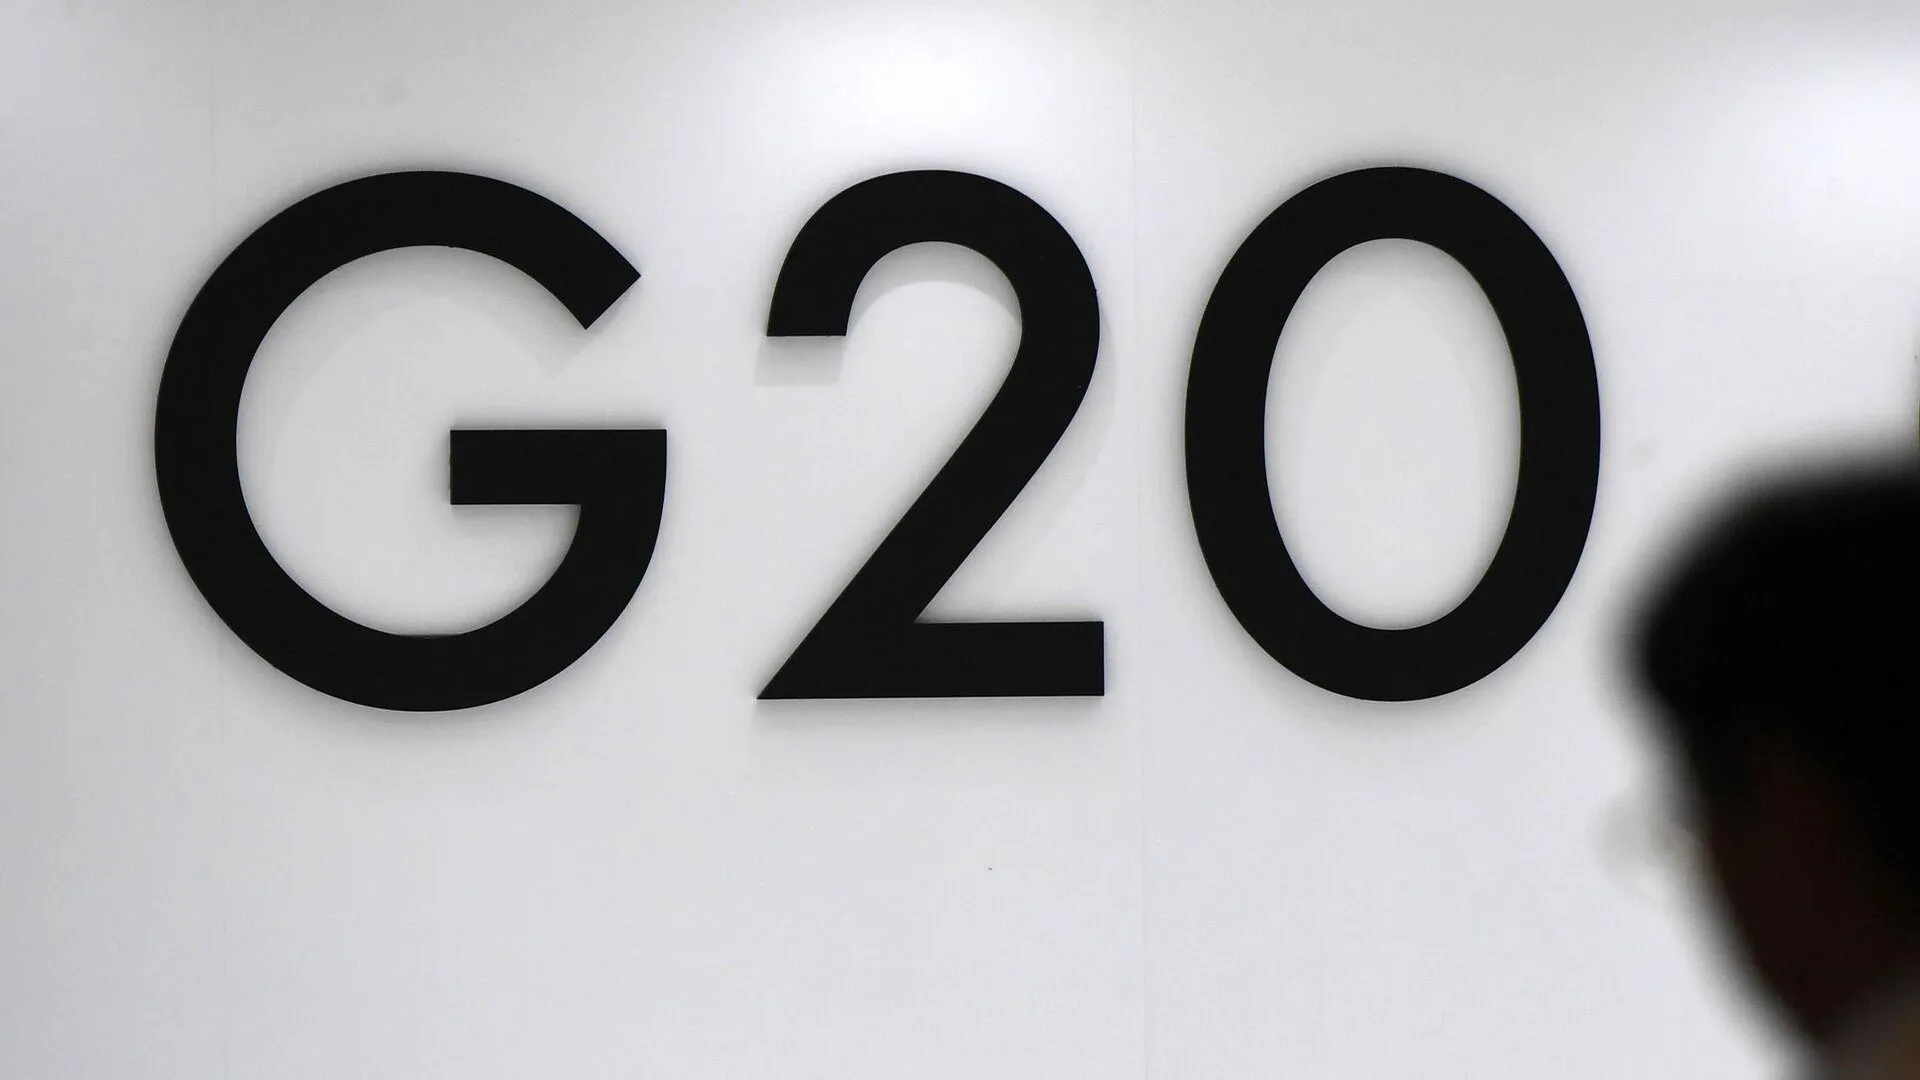 «Голос России слышен». Песков — о работе Лаврова на G20